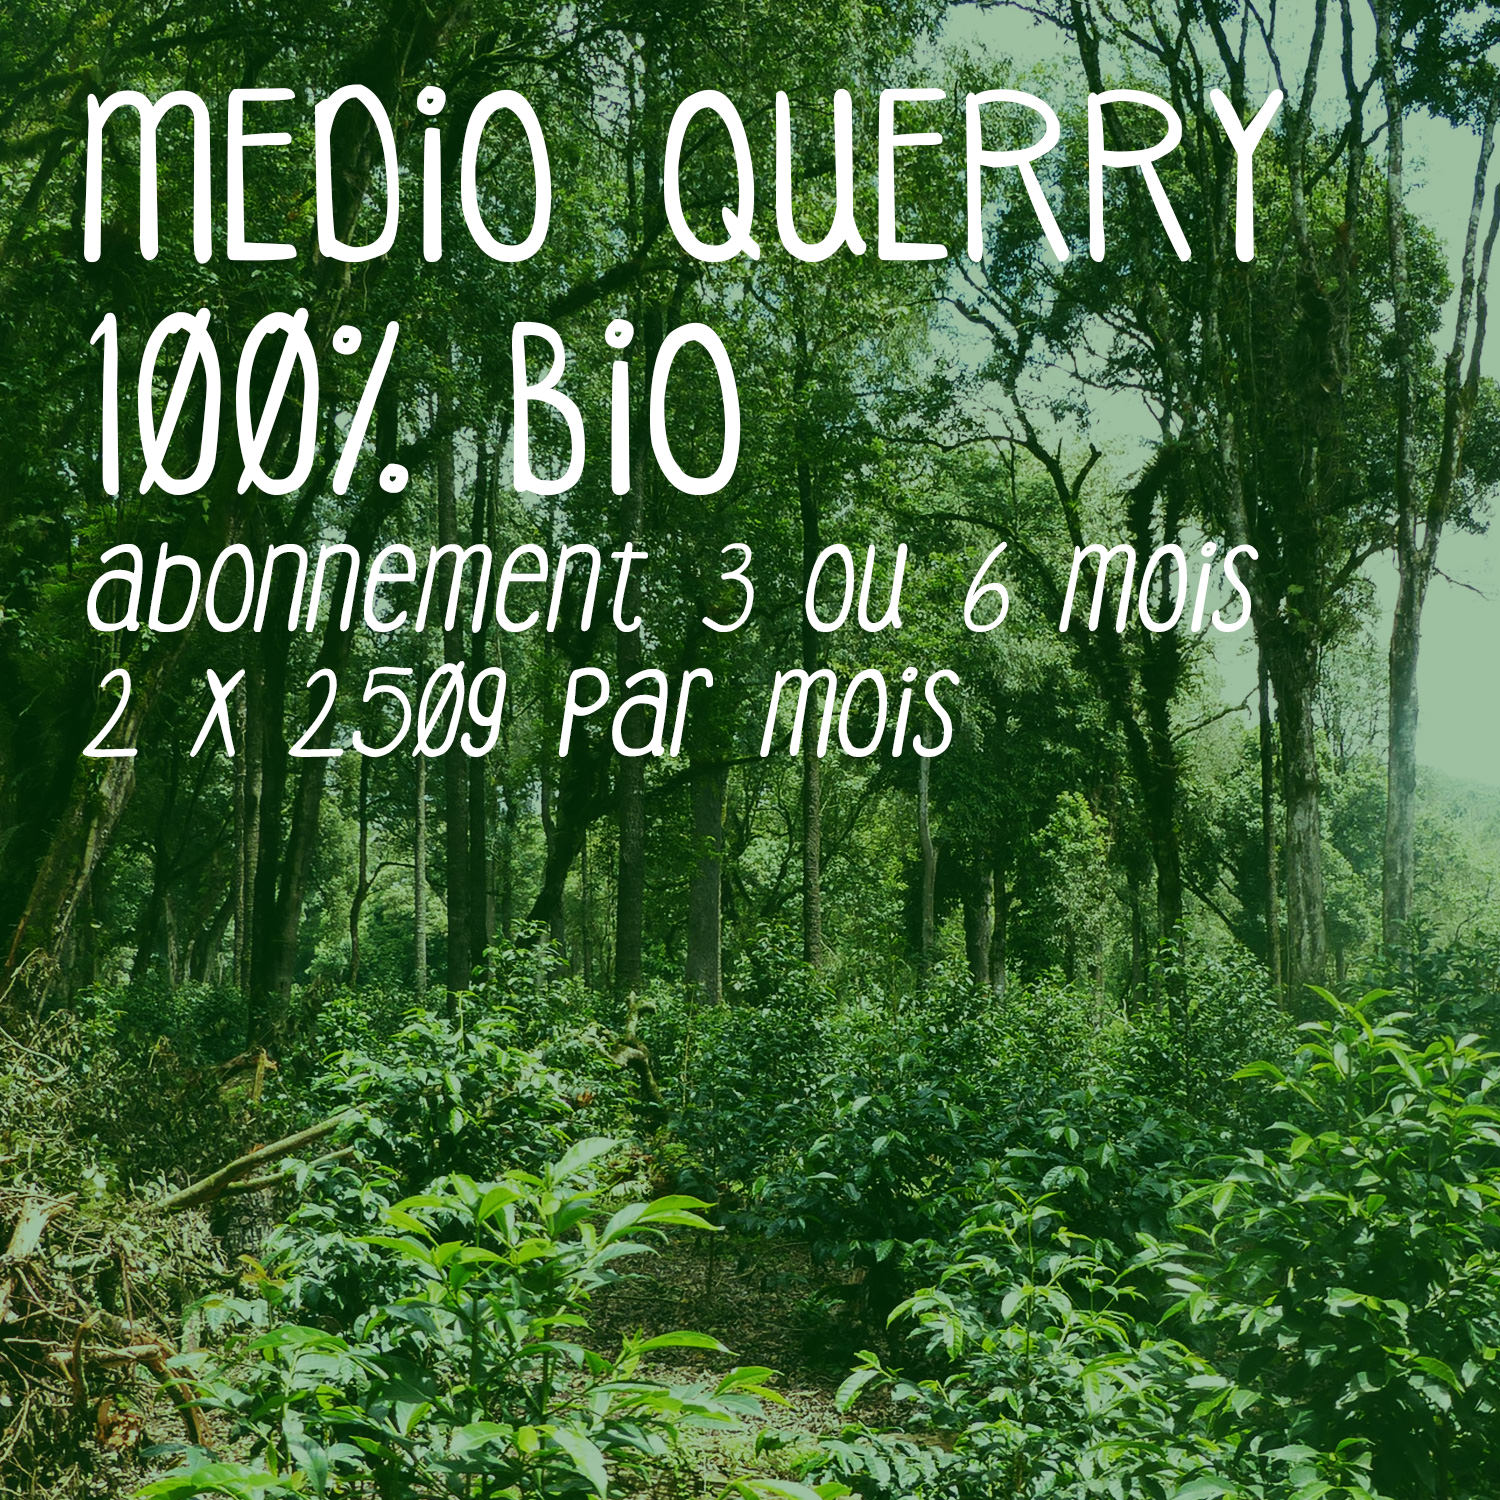 Abonnement café Medio Querry 100% bio